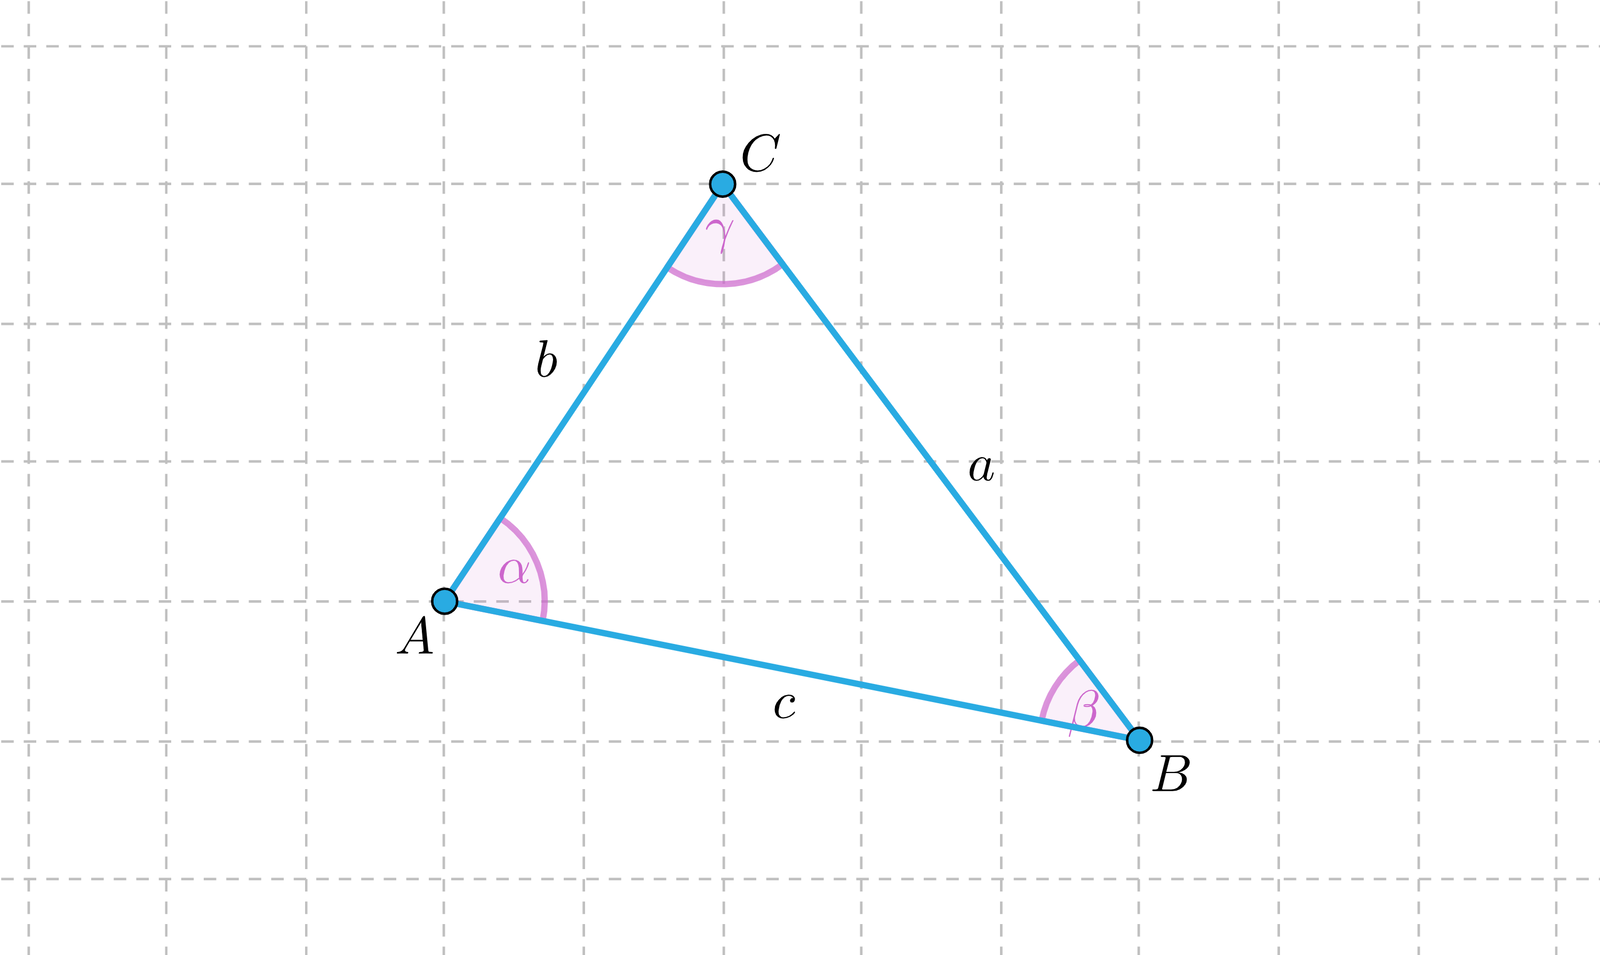 Symulacja ilustruję trójkąt A B C o kątach wewnętrznych alfa, beta, gamma oraz bokach równych A B o długości c, B C o długości a oraz A C o długości b. Wierzchołki trójkąta są interaktywne i można je swobodnie przemieszczać. Zmiana położenia wierzchołków powoduje zmianę danych dotyczących kwadratów długości boków, sumę kwadratów długości dwóch boków oraz kątów alfa, beta, gamma. Przykład 1, trójkąt ostrokątny. a2=25 b2=13 c2=13 b2+c2=39 a2+c2=51 a2+b2=38. α=67.62° β=70.56° γ=41.82° Przykład 2, trójkąt prostokątny. a2=18 b2=18 c2=13 b2+c2=54 a2+c2=54 a2+b2=36. α=45° β=90° γ=45° Przykład 3, trójkąt rozwartokątny. a2=26 b2=8 c2=10 b2+c2=18 a2+c2=36 a2+b2=34. α=116.57° β=33.69° γ=29.74°